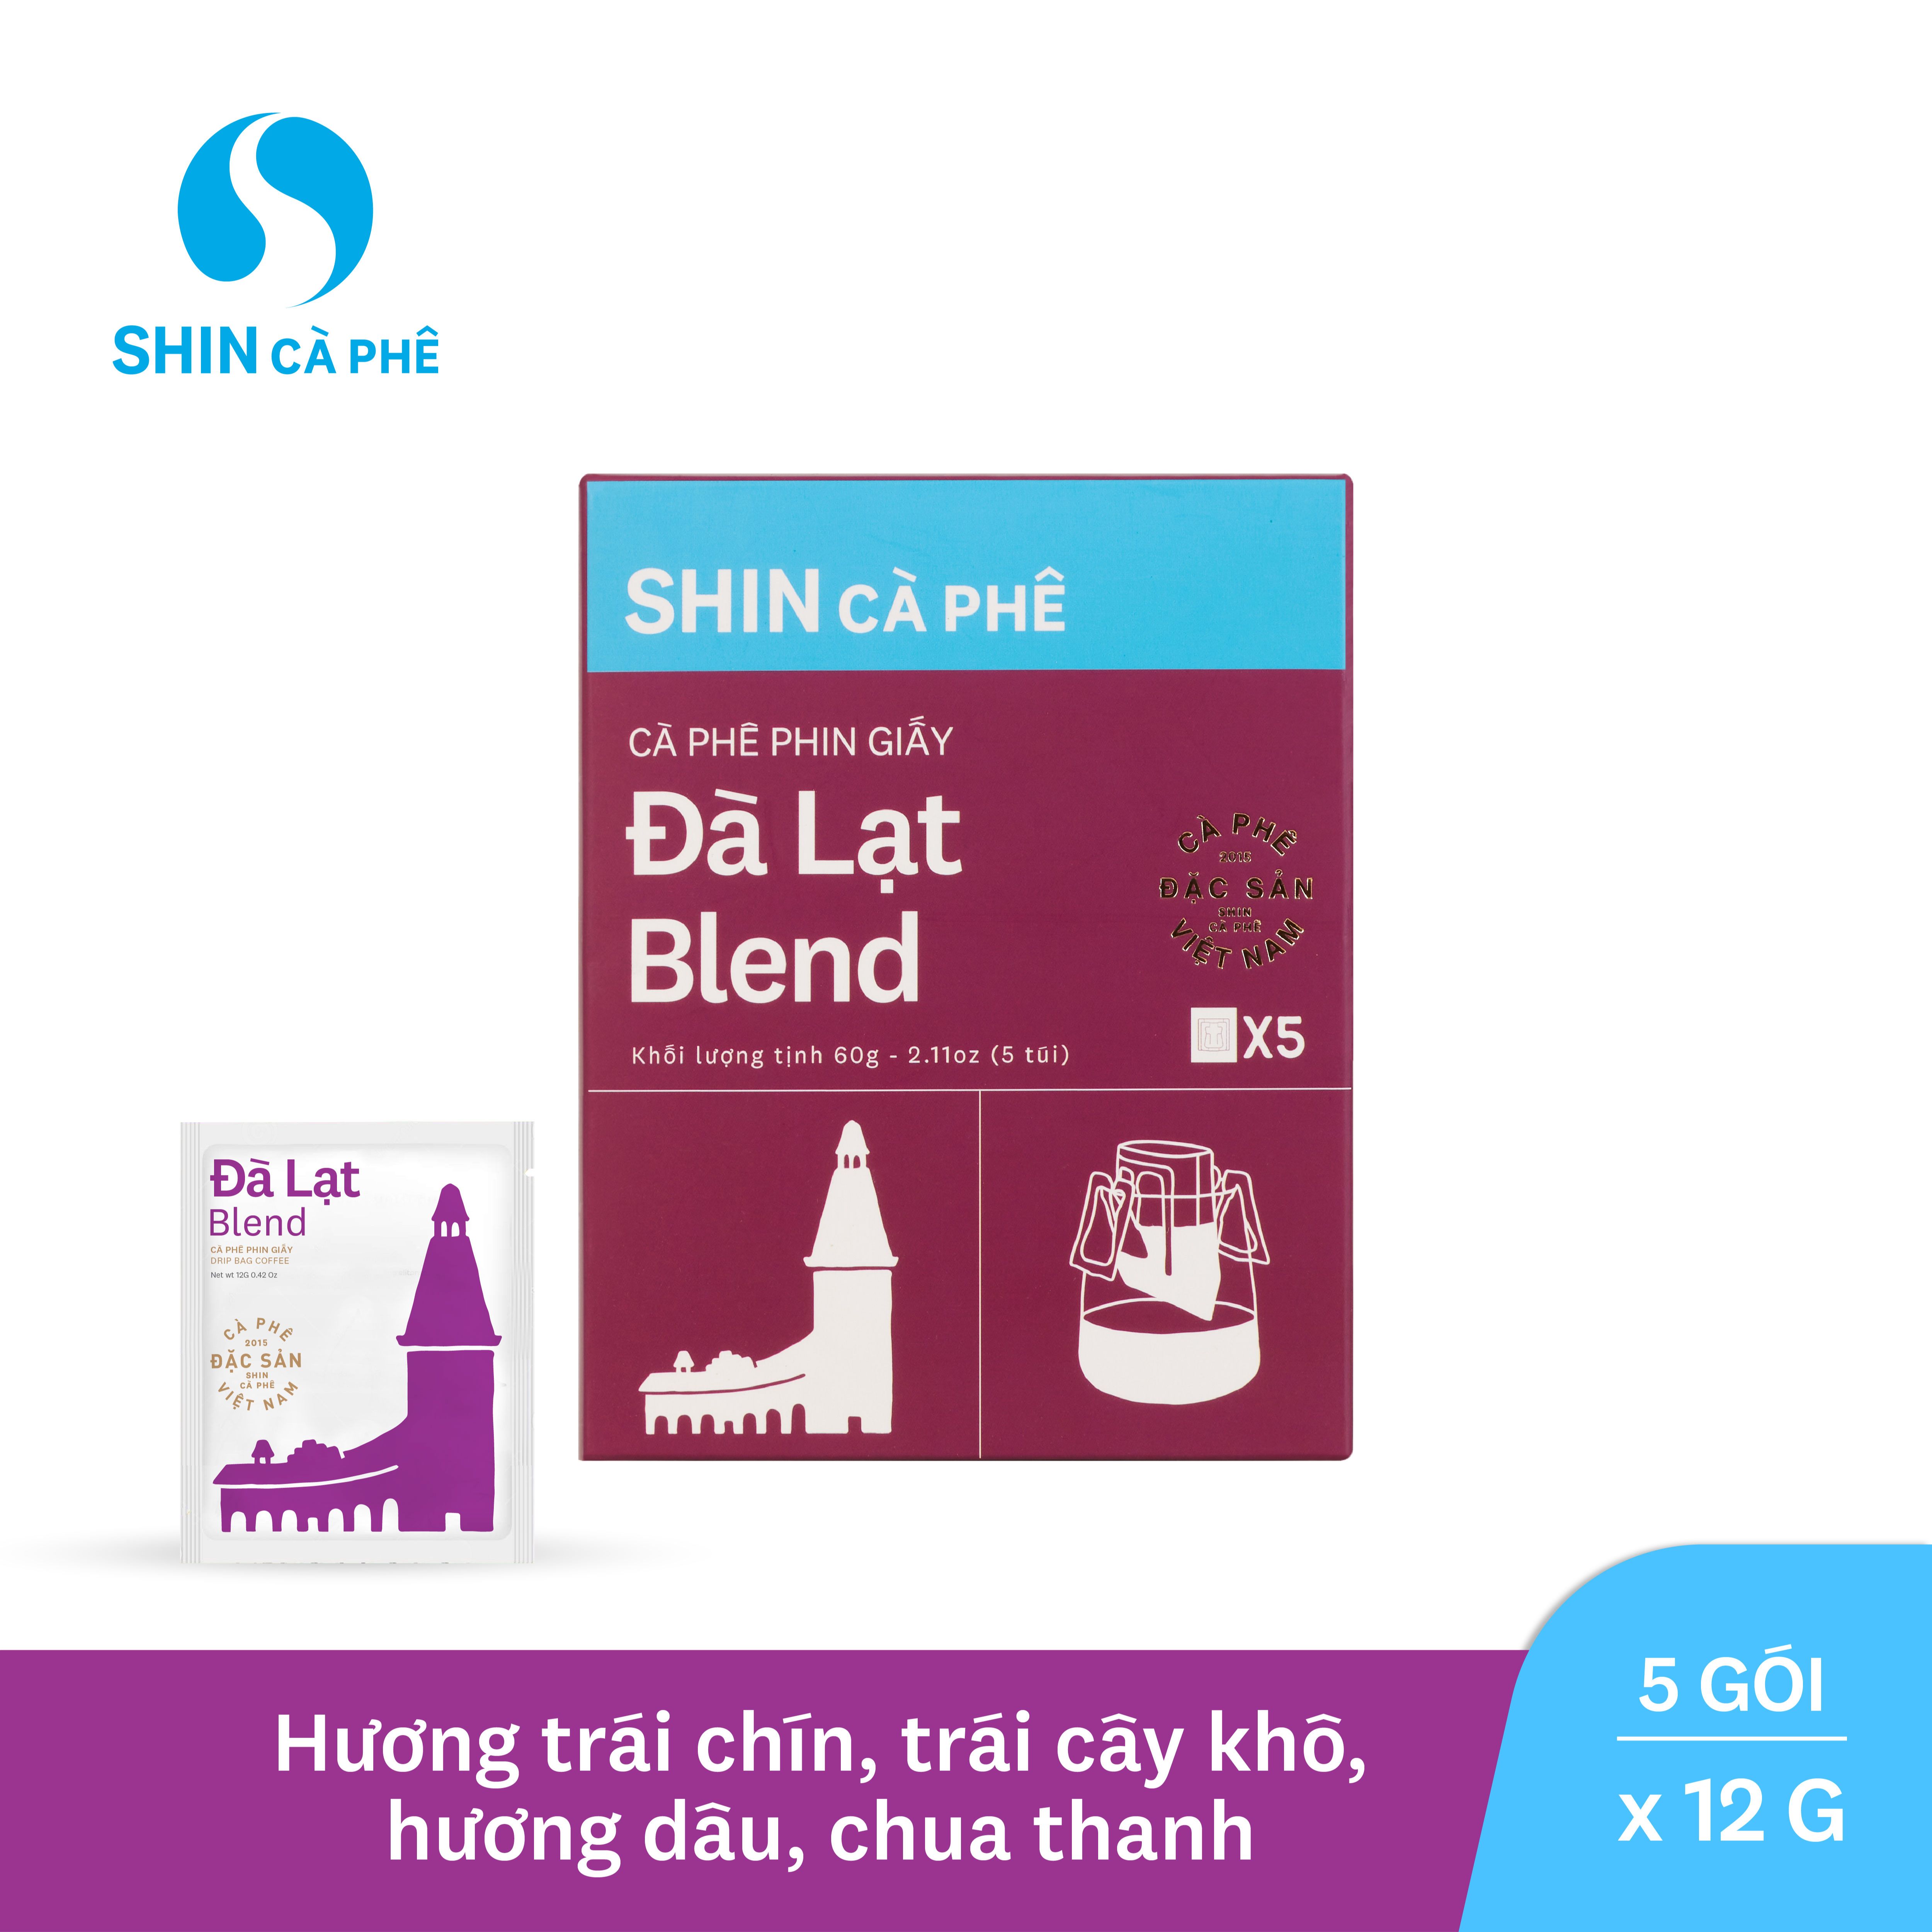 SHIN Cà phê - Đà Lạt Blend Phin giấy tiện lợi - Hộp 5 gói